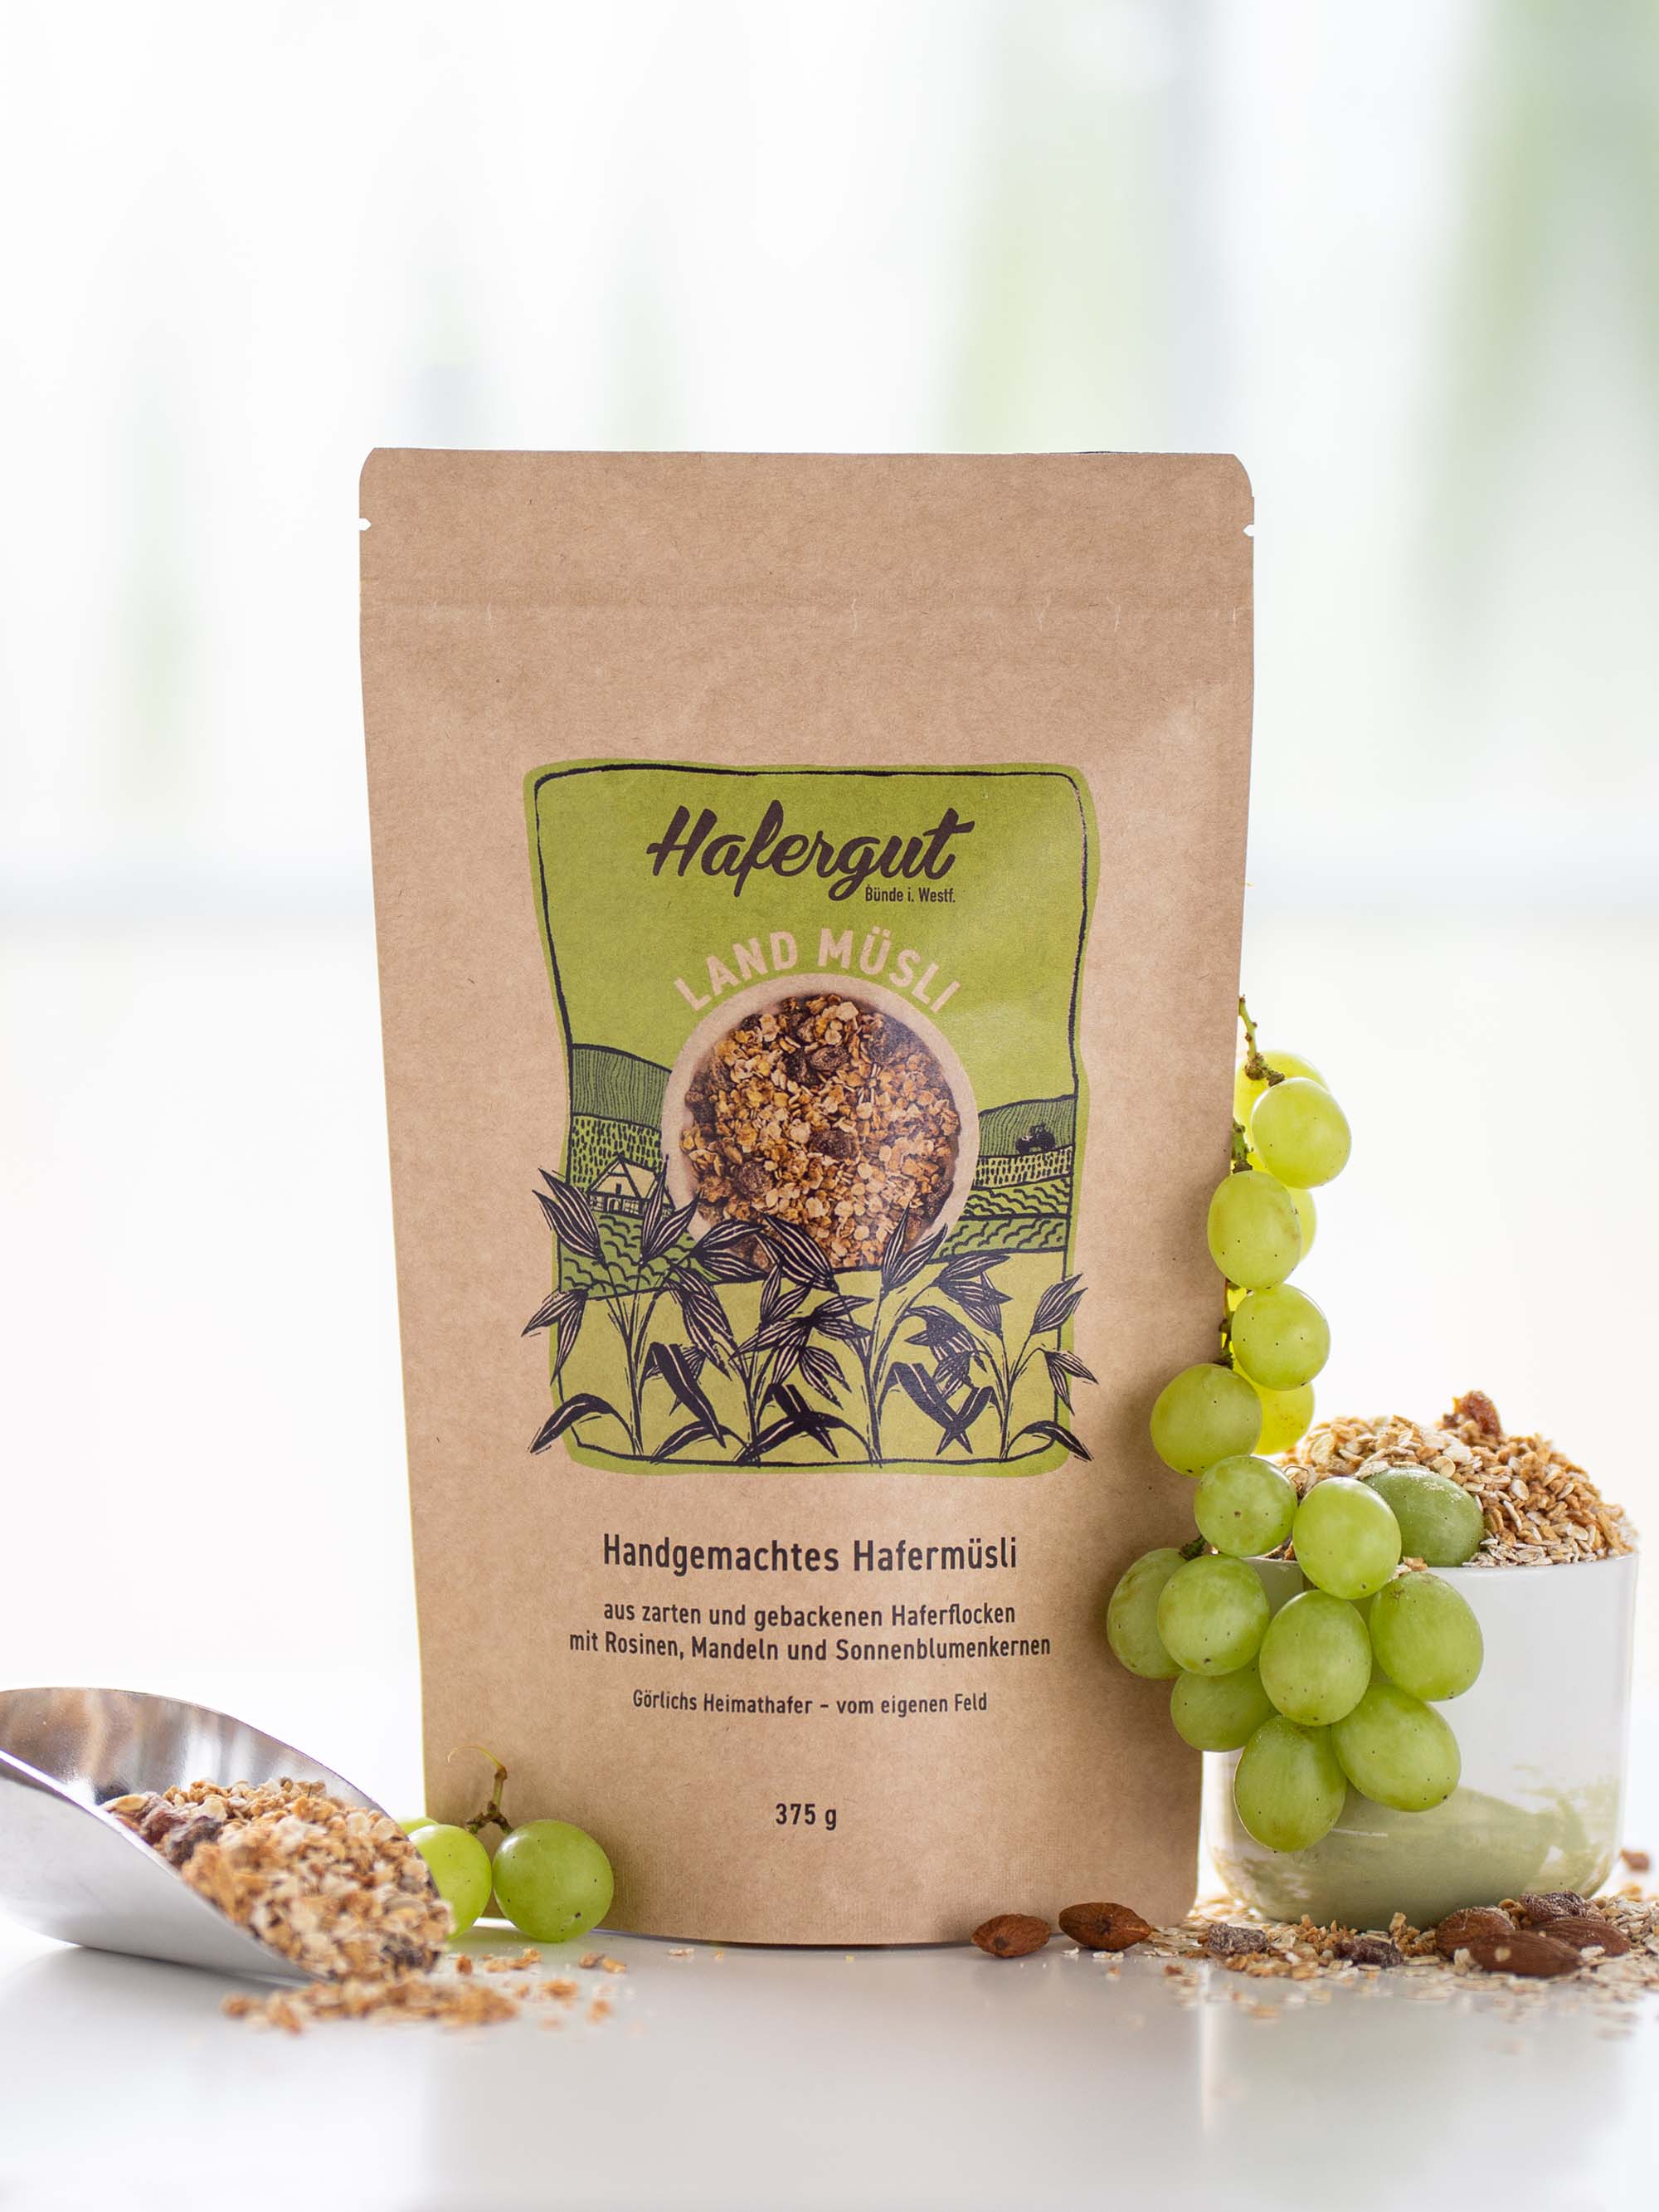 Das Produkt Land-Müsli mit Rosinen ist in seiner Verpackung als Produktbild fotografiert. Umrandet wird das Bild mit grünen, saftigen Weintrauben und verstreuten Landmüsli.